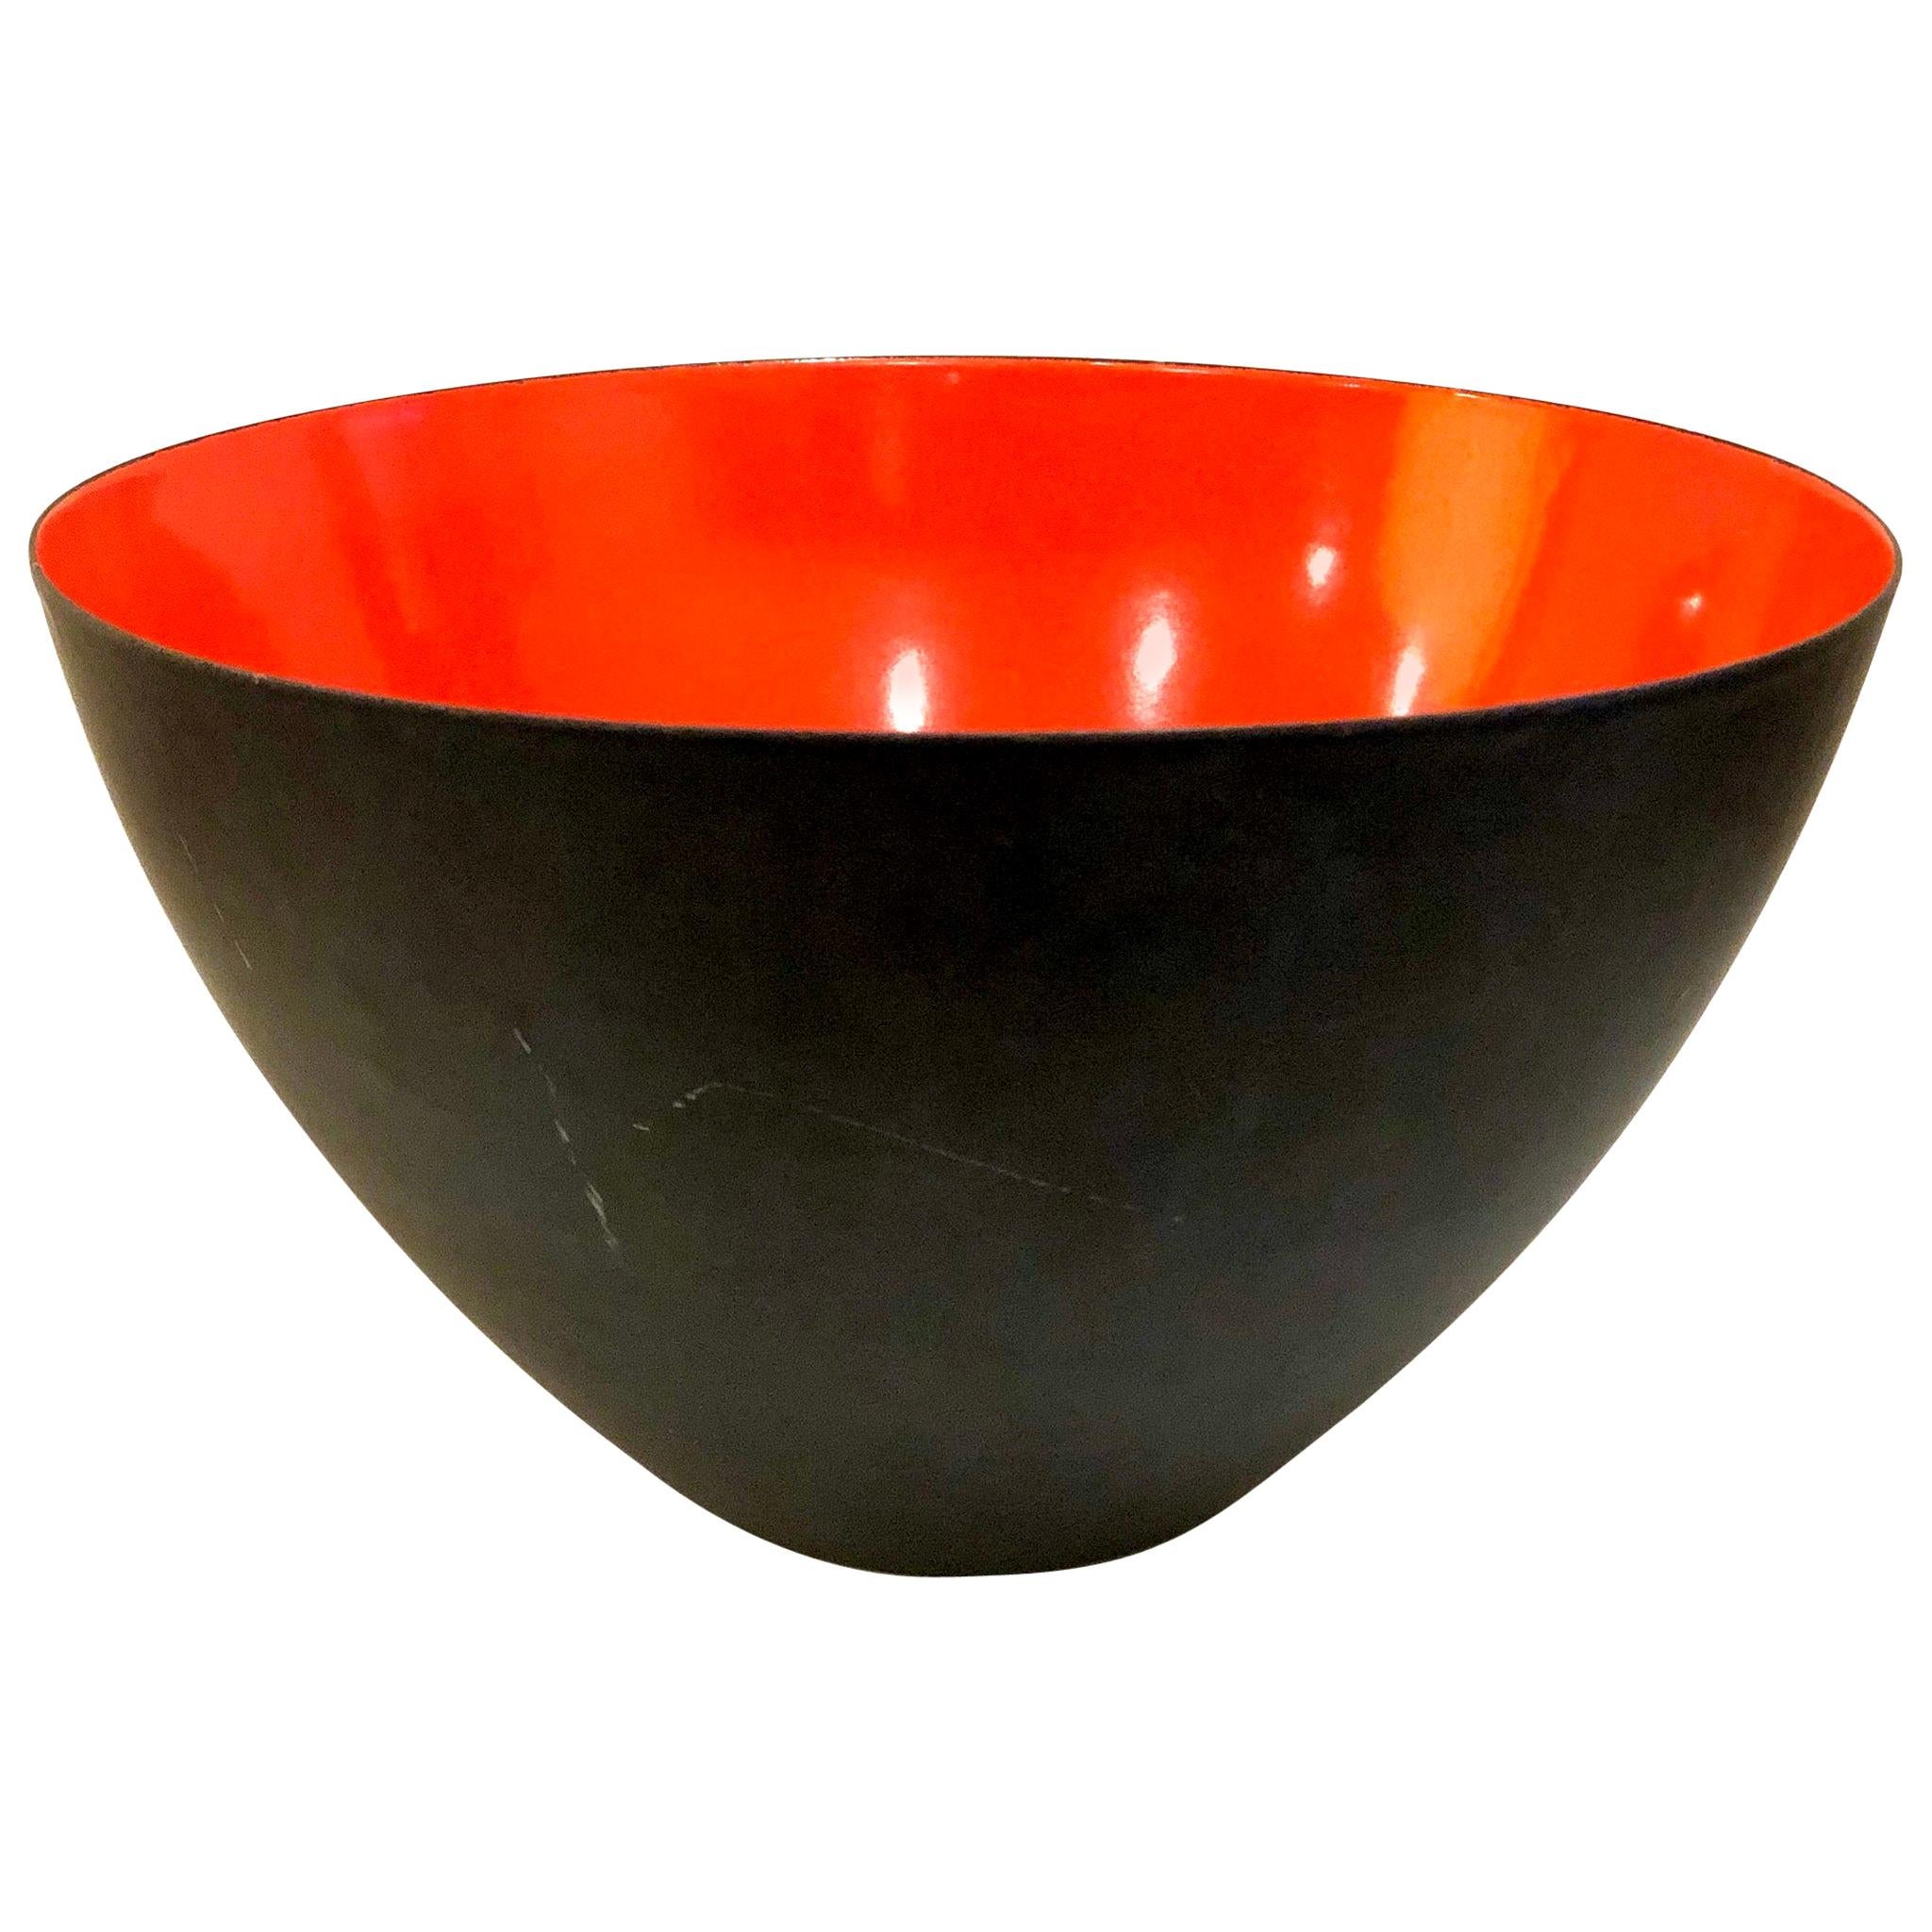 Danish Modern Orange Enamel Krenit Bowl by Herbert Krenchel for Torben Orskov